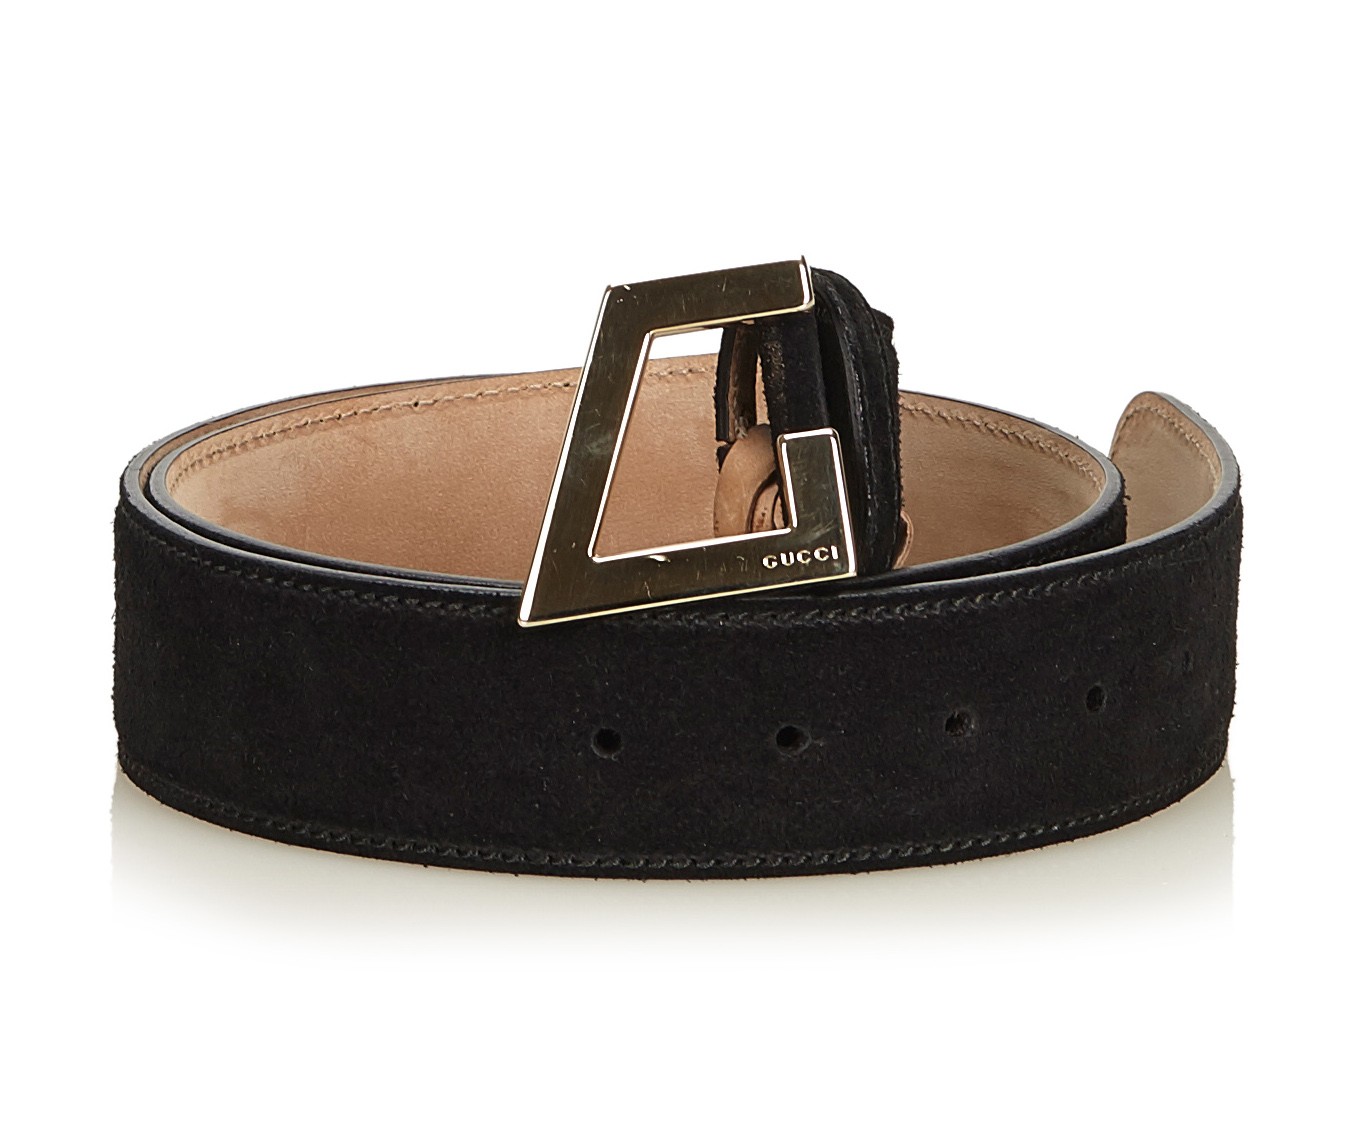 Gucci Vintage - Suede Belt - Black - Leather Belt - Luxury High